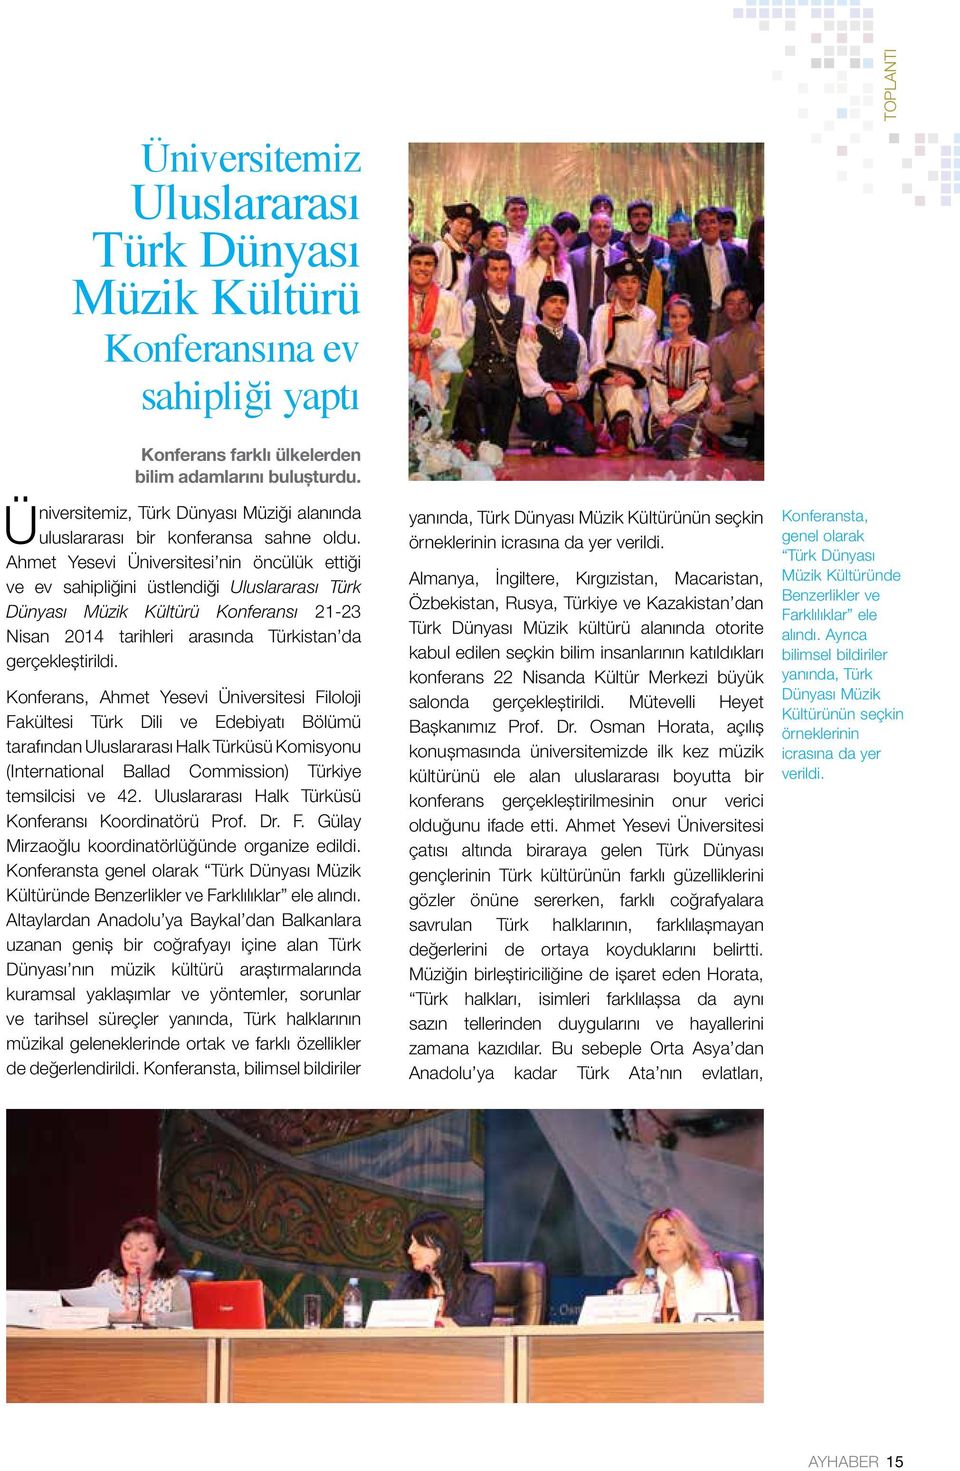 Ahmet Yesevi Üniversitesi nin öncülük ettiği ve ev sahipliğini üstlendiği Uluslararası Türk Dünyası Müzik Kültürü Konferansı 21-23 Nisan 2014 tarihleri arasında Türkistan da gerçekleştirildi.